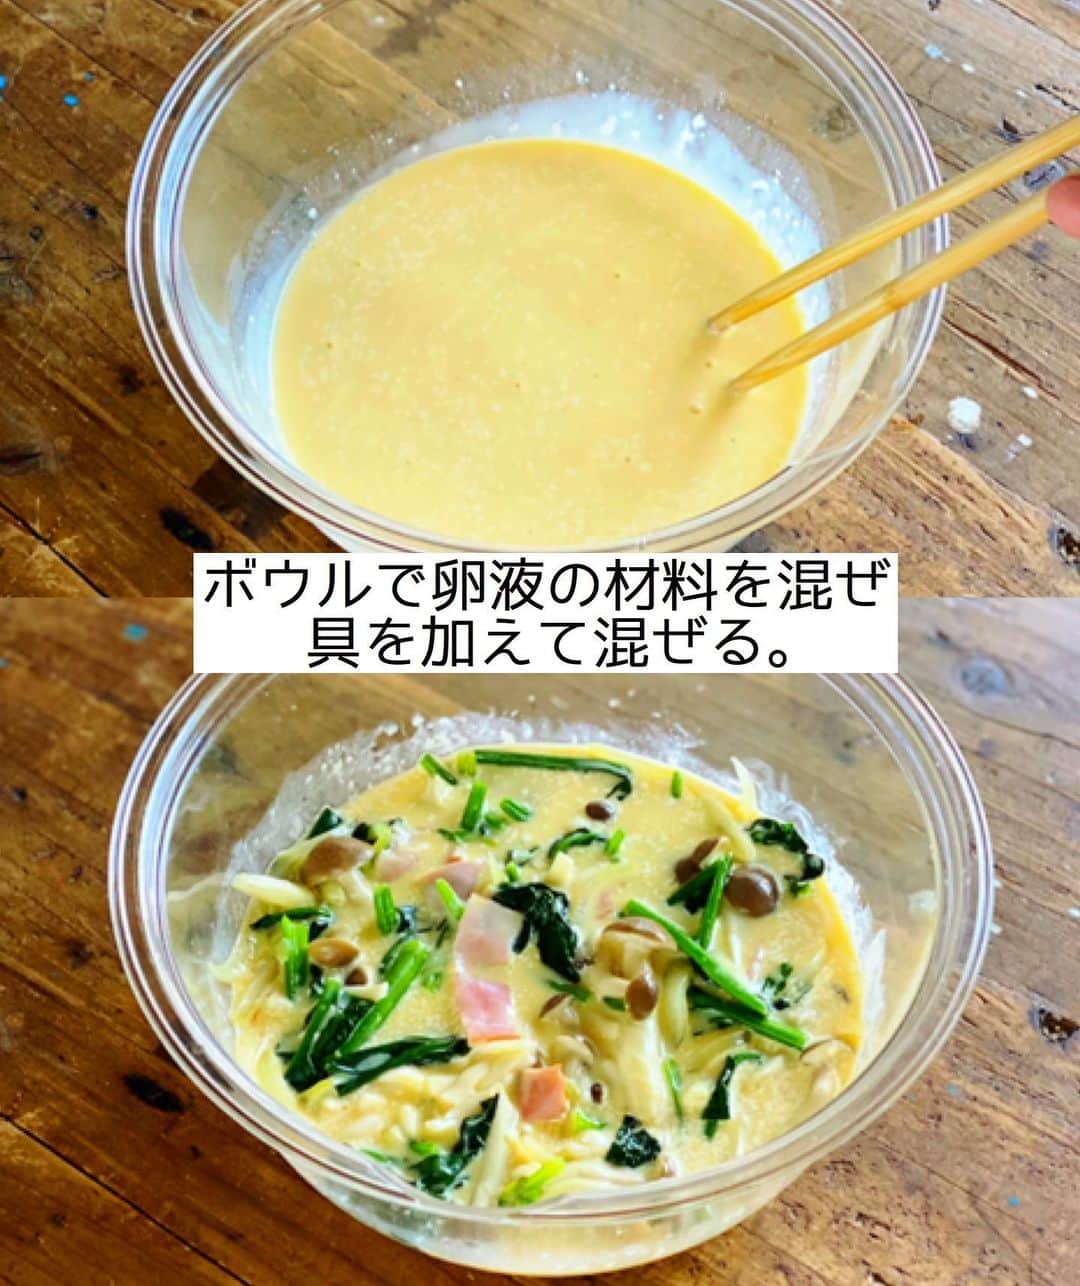 Mizuki【料理ブロガー・簡単レシピ】さんのインスタグラム写真 - (Mizuki【料理ブロガー・簡単レシピ】Instagram)「・﻿ 【#レシピ 】ーーーー﻿ ♡皮なしキッシュ♡﻿ ーーーーーーーーーー﻿ ﻿ ﻿ ﻿ おはようございます(*^^*)﻿ ﻿ 昨日は沢山のコメントをいただき﻿ ありがとうございました（ ; ; ）﻿ 皆さんの温かさに胸がいっぱいです。﻿ ﻿ 今日から料理する自分に戻りますが﻿ またきっと皆さんのお話しもお聞かせ下さい☺️﻿ ﻿ ﻿ ﻿ ﻿ ﻿ さて、今日ご紹介させていただくのは﻿ パイ生地要らずの皮なしキッシュ♩﻿ 普段の食事から﻿ パーティーメニューにも使える﻿ 華やかな卵料理です(*^^*)﻿ ﻿ 今回は大きく作りましたが﻿ ココットに分けて焼いても◎﻿ とっても簡単にできるので﻿ よかったらお試し下さいね♩﻿ ﻿ ﻿ ﻿ ＿＿＿＿＿＿＿＿＿＿＿＿＿＿＿＿＿＿＿＿﻿ 【20cm耐熱皿1つ分】﻿ ベーコン...2枚﻿ 玉ねぎ...1/4個﻿ ほうれん草...1/2束﻿ しめじ...1/2袋﻿ バター...10g﻿ ●卵...2個﻿ ●牛乳...150ml﻿ ●マヨネーズ...大1﻿ ●塩こしょう...少々﻿ ●ピザ用チーズ...50g﻿ ﻿ 1.ベーコンは1cm幅に切る。玉ねぎは薄切りにする。ほうれん草は4cm長さに切る。しめじはほぐす。﻿ 2.フライパンにバターを中火で熱し、ベーコンと玉ねぎを炒める。玉ねぎがしんなりしたらほうれん草としめじも加えてさっと炒め、火を止めて粗熱を取る。﻿ 3.ボウルに●を入れて混ぜ、2も加えて混ぜる。﻿ 4.耐熱皿に入れ、200度に予熱したオーブンで20〜25分焼く。﻿ ￣￣￣￣￣￣￣￣￣￣￣￣￣￣￣￣￣￣￣￣﻿ ﻿ ﻿ ﻿ 《ポイント》﻿ ♦︎私は20×20×4cmサイズの耐熱皿を使用しました♩﻿ ♦︎(お好みで)耐熱皿にバターを塗っておくと風味がよくなり、くっつきにくくなります♩ ♦︎ココットに分けて作る場合は焼き時間を短縮して下さい♩﻿ ﻿ ﻿ ﻿ ﻿ ﻿ ﻿ ﻿ ﻿ 📕新刊予約開始しました📕﻿ 【ラクしておいしい！#1品晩ごはん 】﻿ ￣￣￣￣￣￣￣￣￣￣￣￣￣￣￣￣￣﻿ 私たちだってヘトヘトな日がある•••﻿ 毎日何品も作っていられない•••﻿ もうごはんに悩みたくない😢﻿ そう思うことってありませんか？﻿ そんな時、1品ごはんはいかがでしょう？﻿ というご提案です✨﻿ ﻿ ﻿ 【1品ごはん】は﻿ 副菜いらずで全てがシンプル！﻿ ￣￣￣￣￣￣￣￣￣￣￣￣￣￣￣￣￣￣﻿ 一品つくるだけでいいから﻿ 献立を考えなくてよし！﻿ ￣￣￣￣￣￣￣￣￣￣￣￣￣￣￣￣￣￣﻿ 悩まない、疲れない、﻿ 気力や時間がなくてもなんとかなる！﻿ ￣￣￣￣￣￣￣￣￣￣￣￣￣￣￣￣￣￣﻿ そんな頼りになる﻿ 便利なお助けごはんです☺️💕﻿ (ハイライトに🔗貼っています✨)﻿ ￣￣￣￣￣￣￣￣￣￣￣￣￣￣￣￣￣﻿ ﻿ ﻿ ﻿ ﻿ ﻿ ⭐️発売中⭐️﻿ ＿＿＿＿＿＿＿＿＿＿＿＿＿＿＿＿＿＿﻿ しんどくない献立、考えました♩﻿ \15分でいただきます/﻿ 📕#Mizukiの2品献立 📕﻿ ﻿ 和食をもっとカジュアルに♩﻿ \毎日のごはんがラクになる/﻿ 📘#Mizukiの今どき和食 📘﻿ ﻿ ホケミレシピの決定版♩﻿ \はじめてでも失敗しない/﻿ 📙ホットケーキミックスのお菓子 📙﻿ ﻿ NHKまる得マガジンテキスト☆﻿ ホットケーキミックスで﻿ 📗絶品おやつ&意外なランチ📗﻿ ￣￣￣￣￣￣￣￣￣￣￣￣￣￣￣￣￣￣﻿ ﻿ ﻿ ﻿ ＿＿＿＿＿＿＿＿＿＿＿＿＿＿＿＿＿＿﻿ レシピを作って下さった際や﻿ レシピ本についてのご投稿には﻿ タグ付け( @mizuki_31cafe )して﻿ お知らせいただけると嬉しいです😊💕﻿ ￣￣￣￣￣￣￣￣￣￣￣￣￣￣￣￣￣￣﻿ ﻿ ﻿ ﻿ ﻿ #キッシュ#卵料理#生クリームなし#クリスマス#Mizuki#簡単レシピ#時短レシピ#節約レシピ#料理#フーディーテーブル#マカロニメイト#おうちごはん#デリスタグラマー#料理好きな人と繋がりたい#食べ物#料理記録#おうちごはんlover#写真好きな人と繋がりたい#foodpic#cooking#recipe#lin_stagrammer#foodporn#yummy#f52grams#皮なしキッシュm」12月18日 8時10分 - mizuki_31cafe